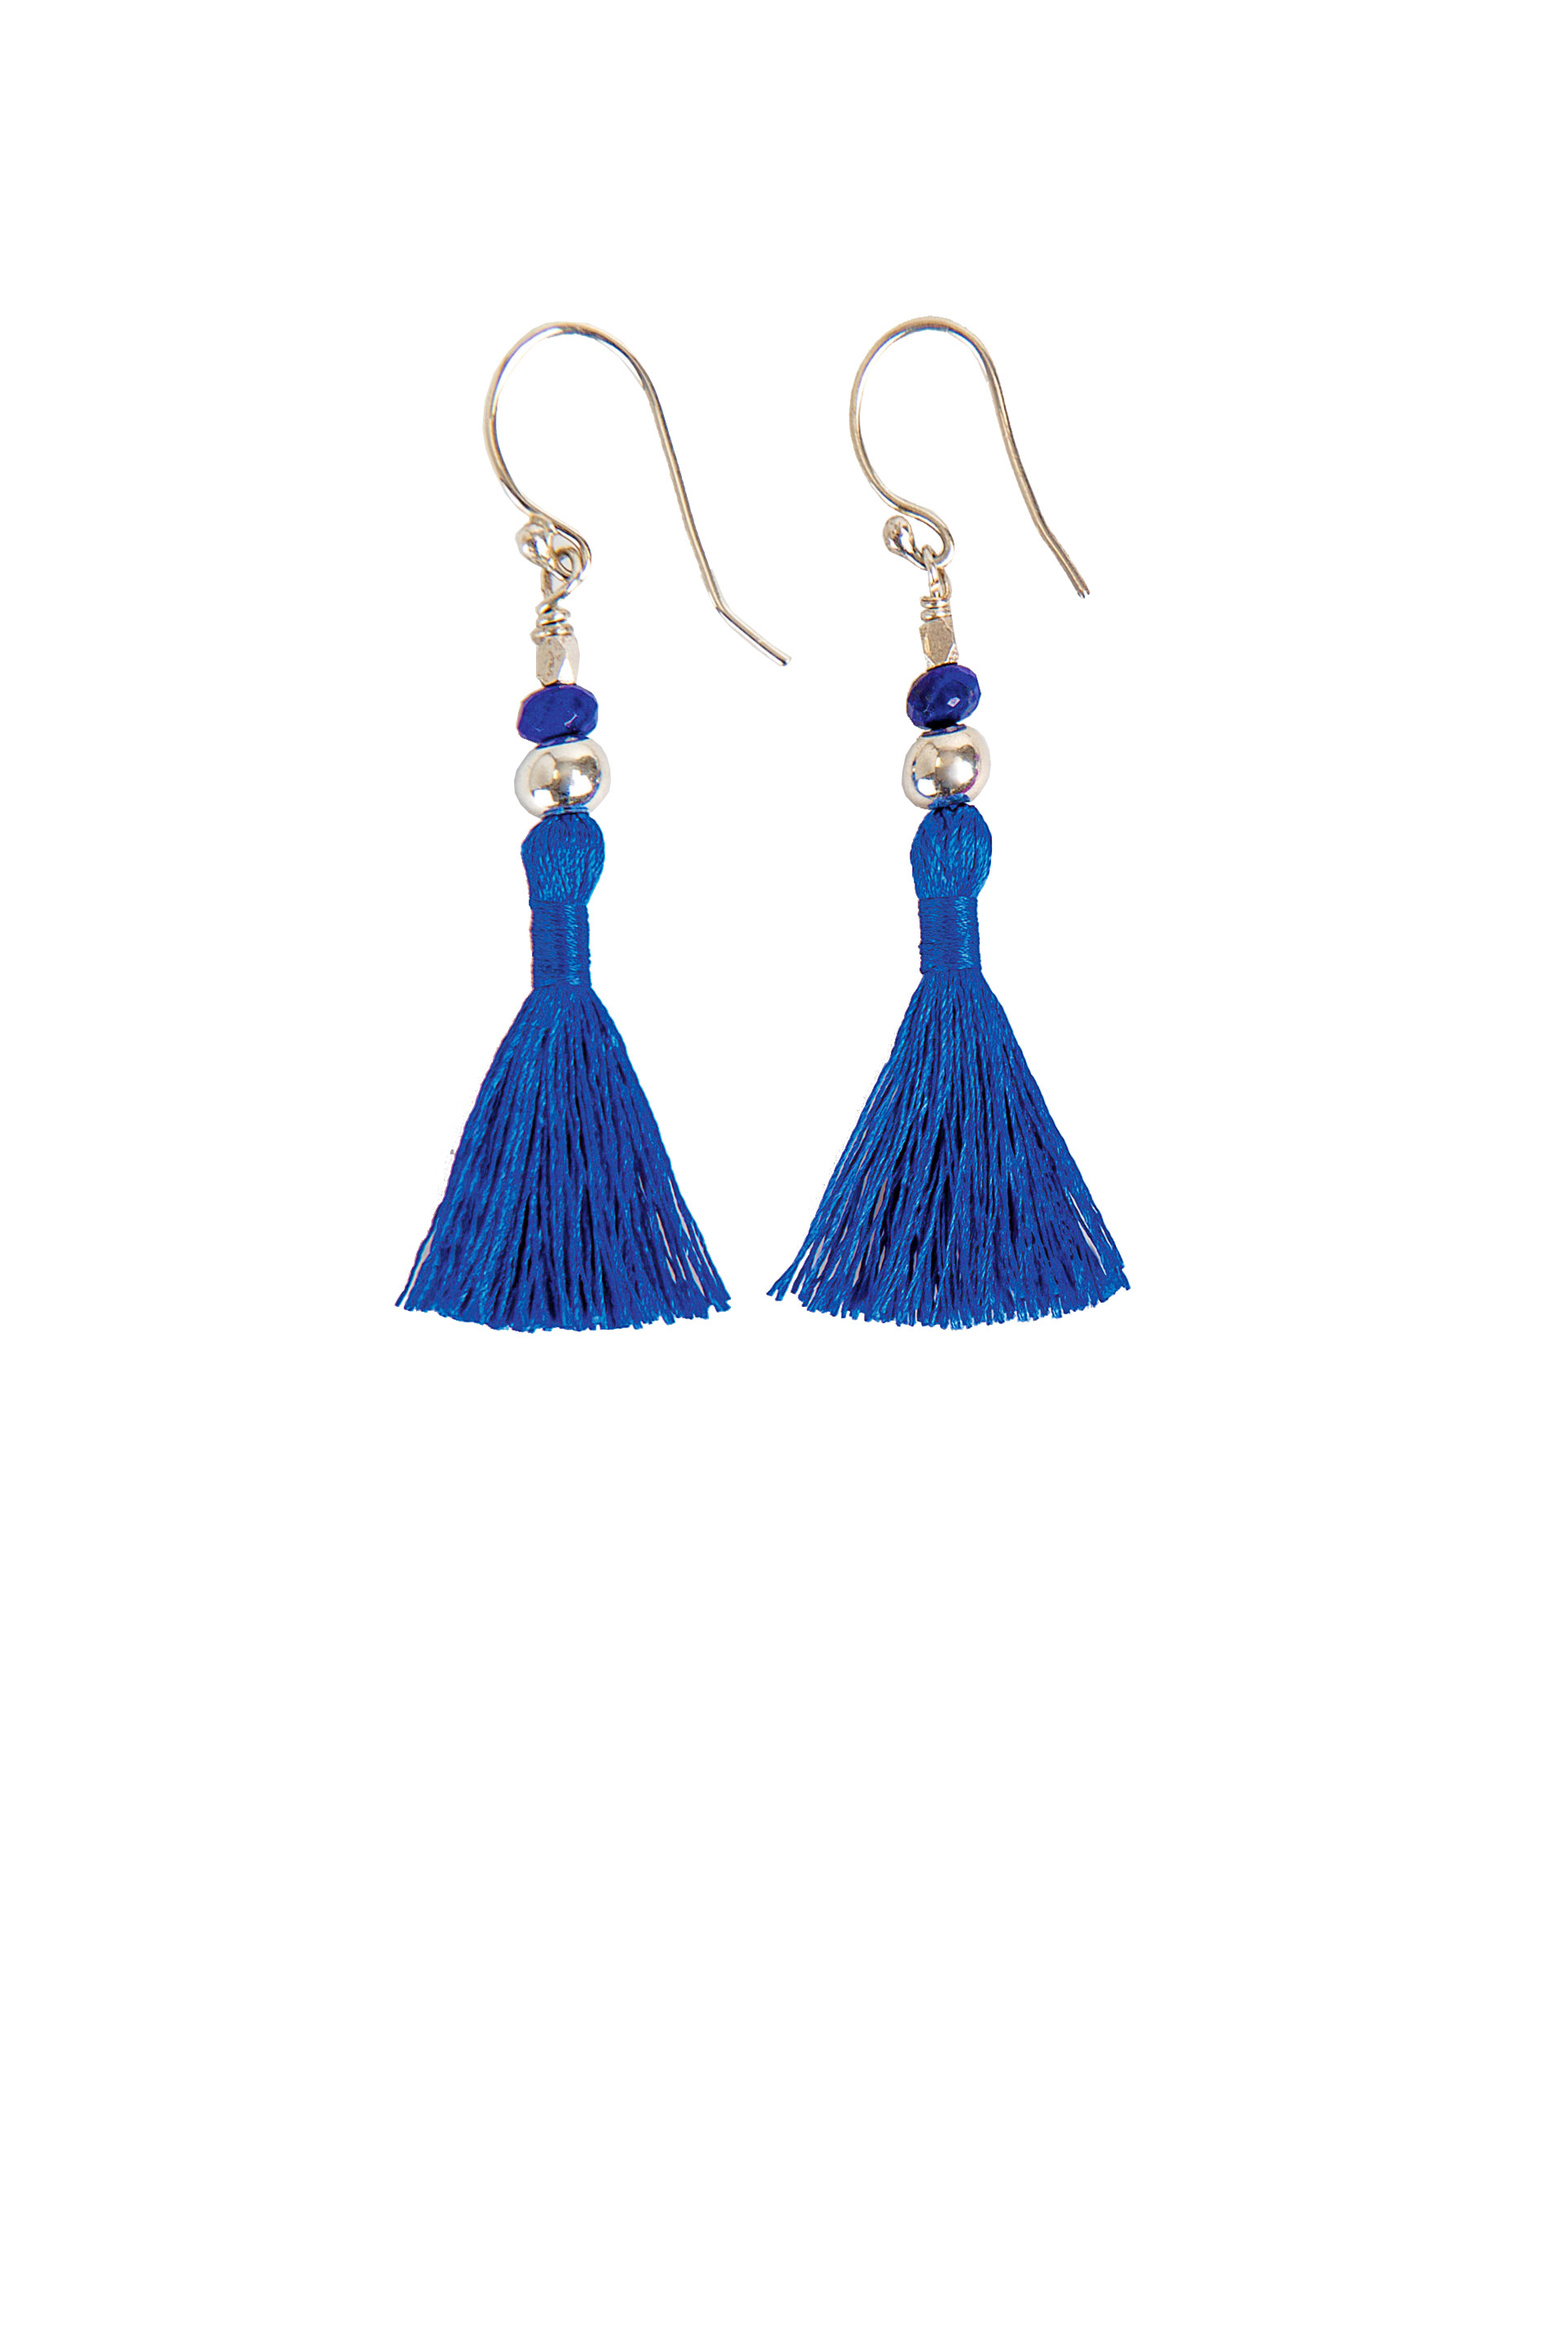 cr100_tassel_earrings_cobalt_blue_lapis_lazuli_white_background_edit.jpg